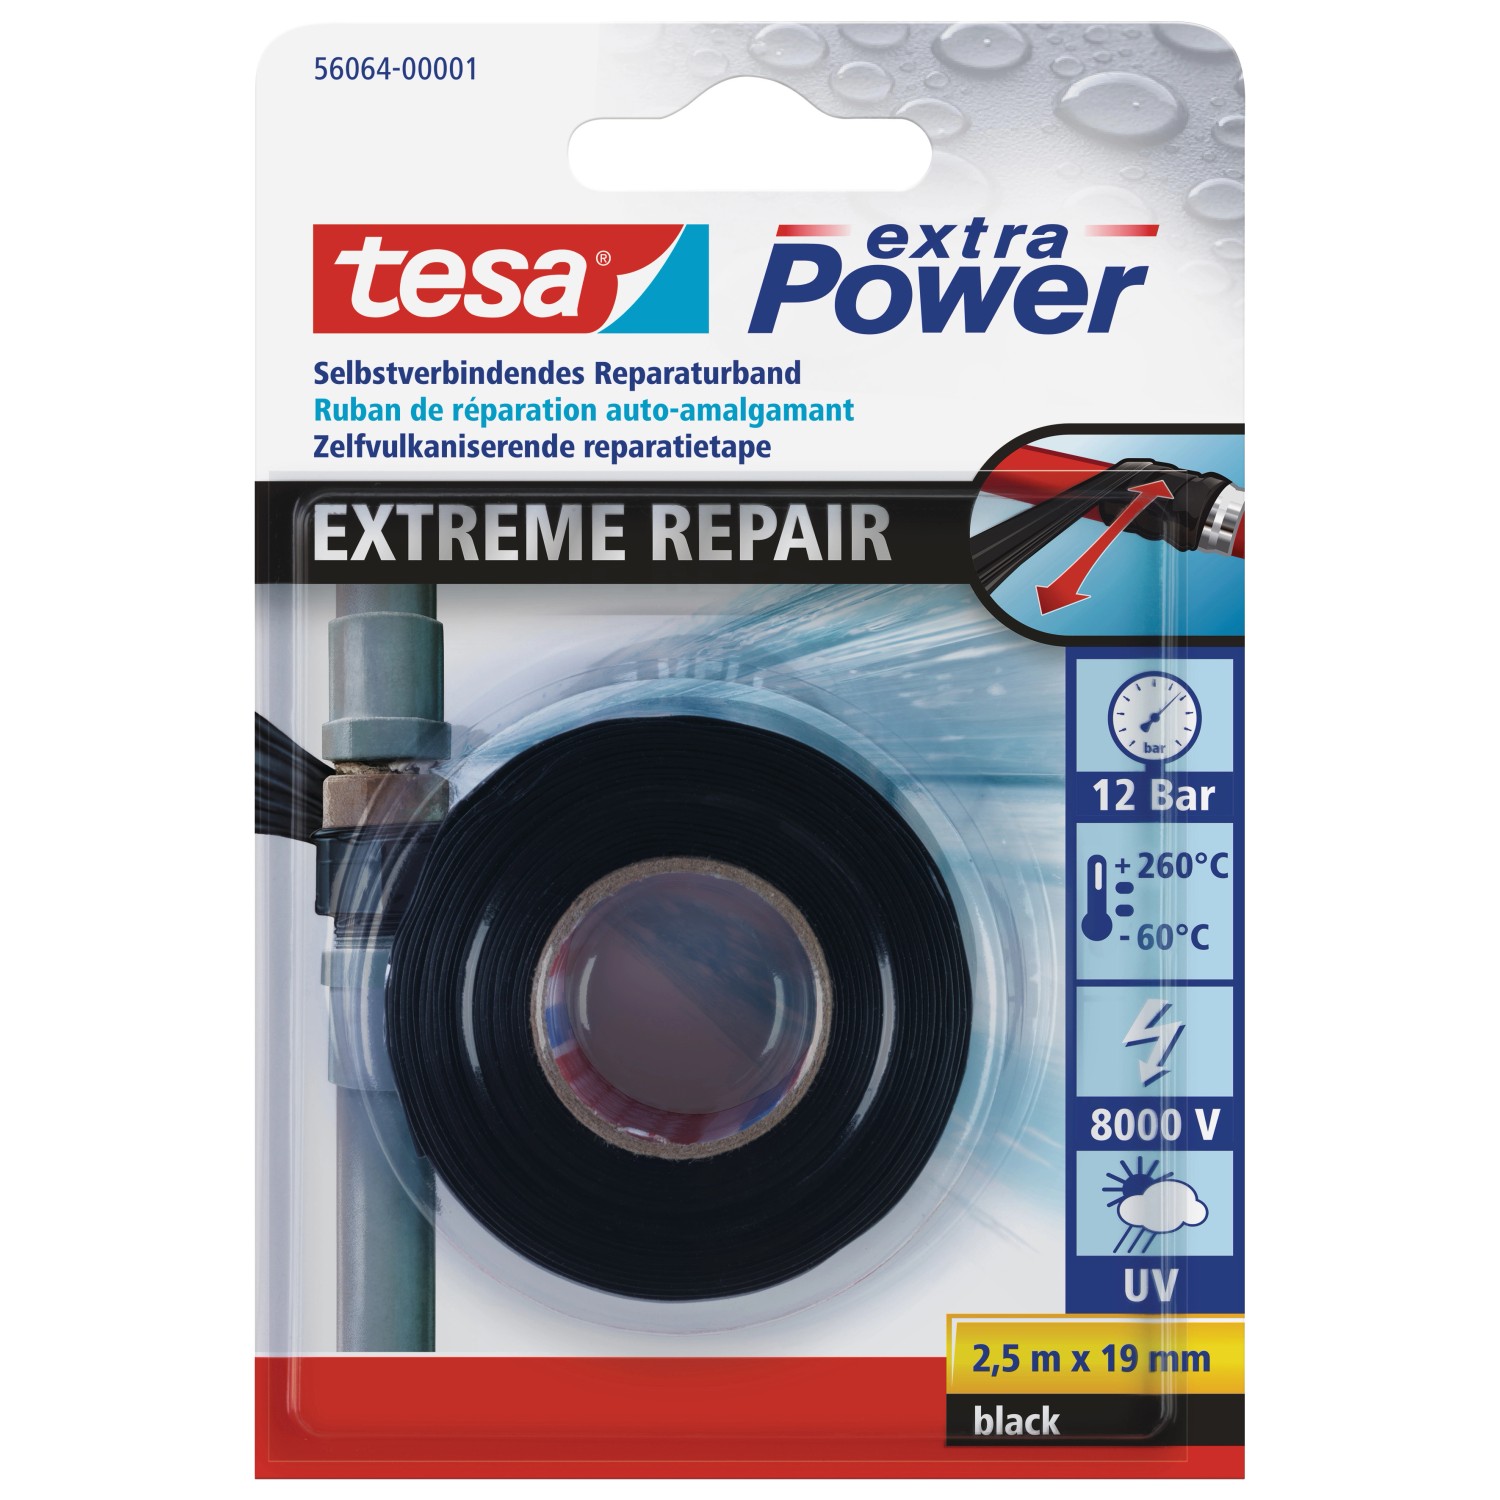 Tesa extra Power Reparaturband Extreme Repair Schwarz 2,5 m x 19 mm von Tesa